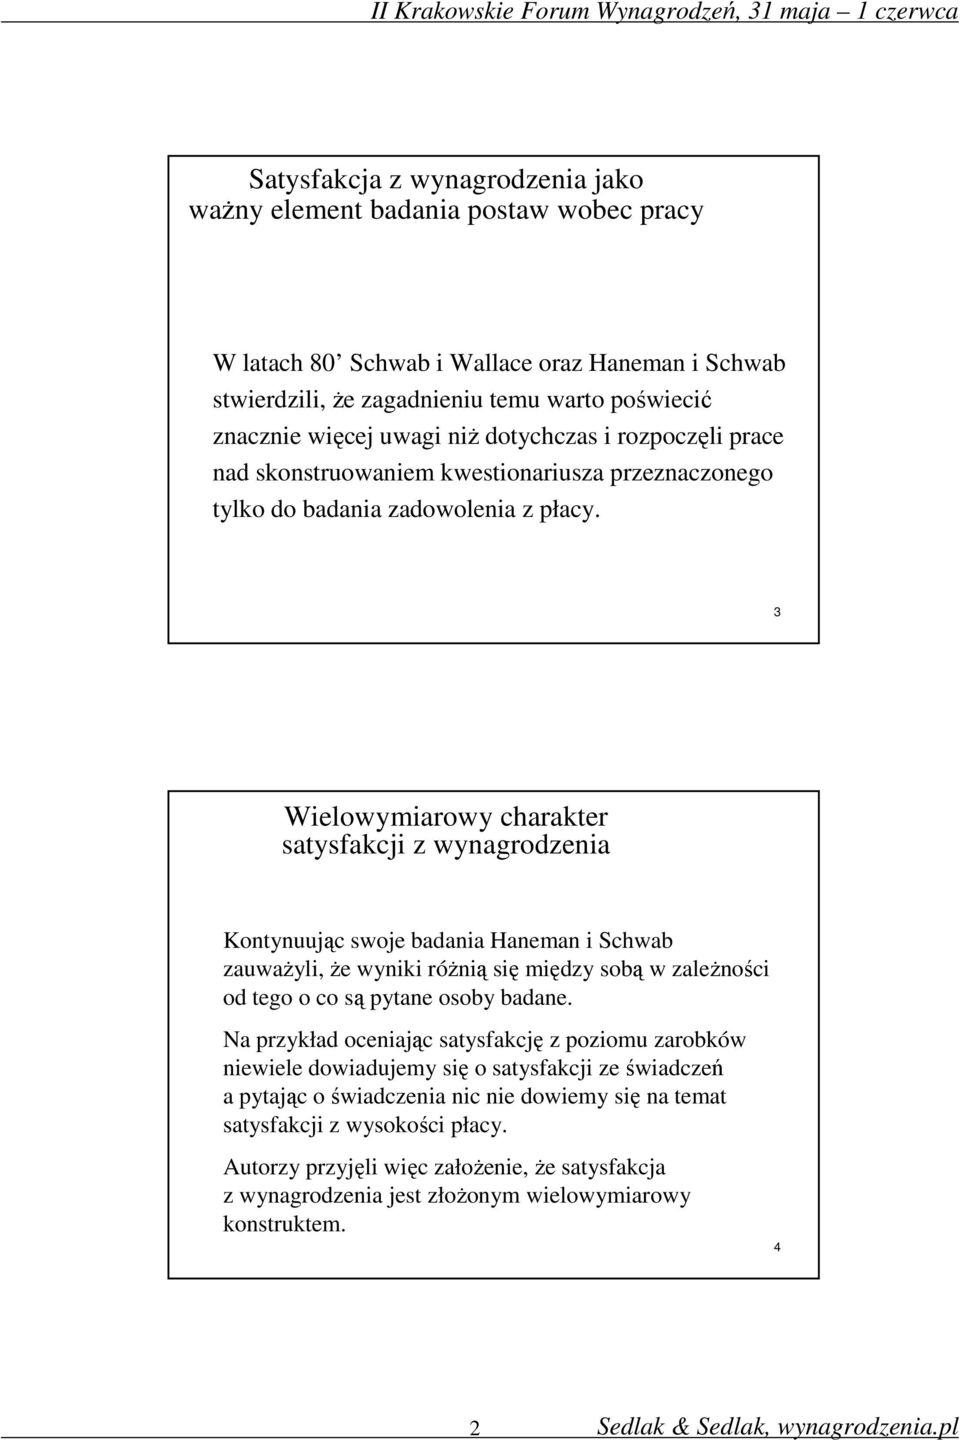 3 Wielowymiarowy charakter satysfakcji z wynagrodzenia Kontynuując swoje badania Haneman i Schwab zauważyli, że wyniki różnią się między sobą w zależności od tego o co są pytane osoby badane.